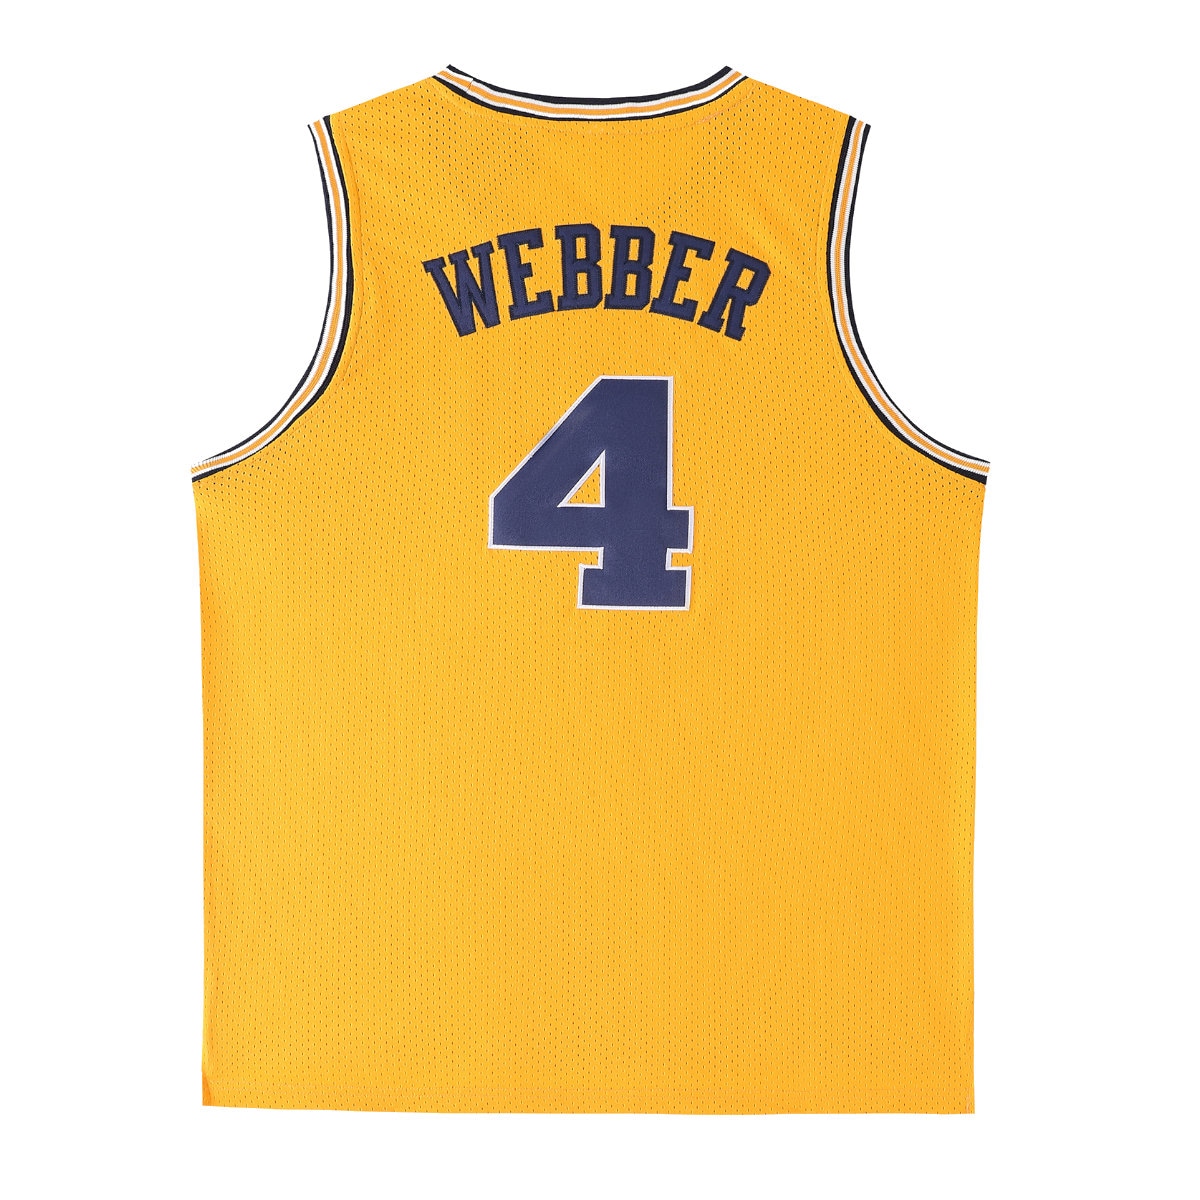 Chris Webber Michigan Basketball Jersey College